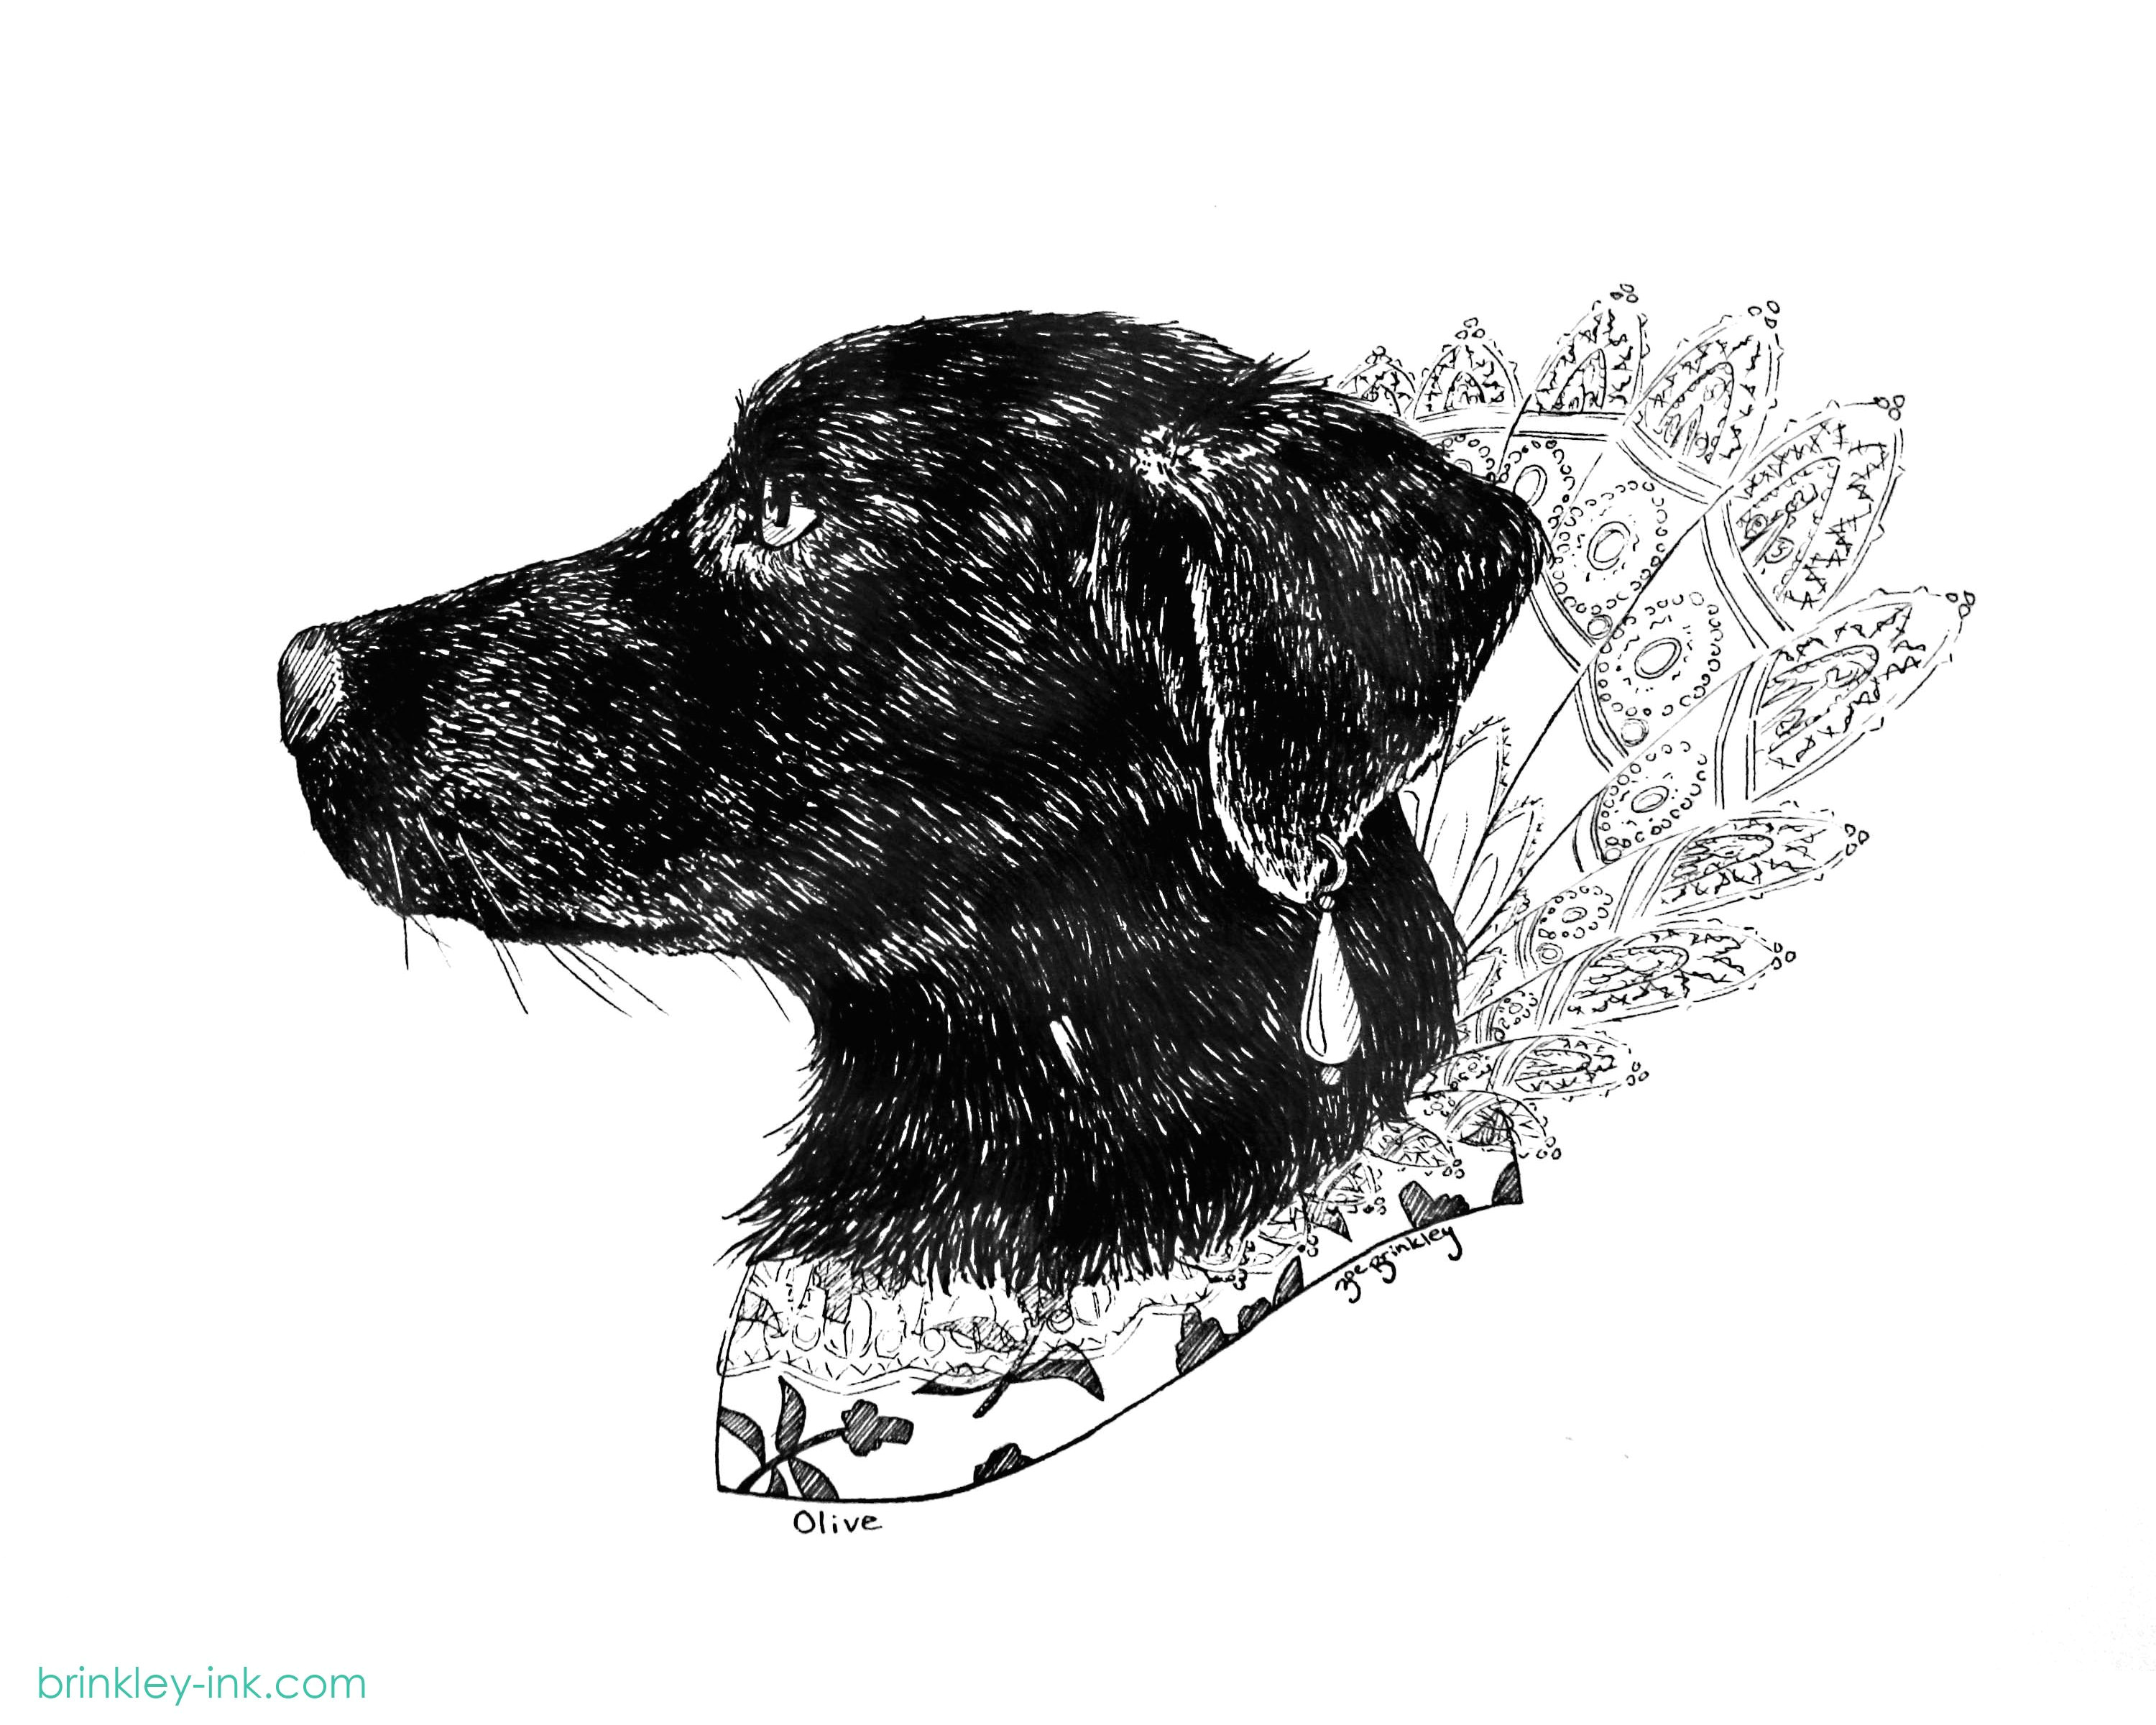 Ink Drawing Dogs Queen Olive by Zoe Brinkley Brinkley Ink Com Brinkleyink Dogs